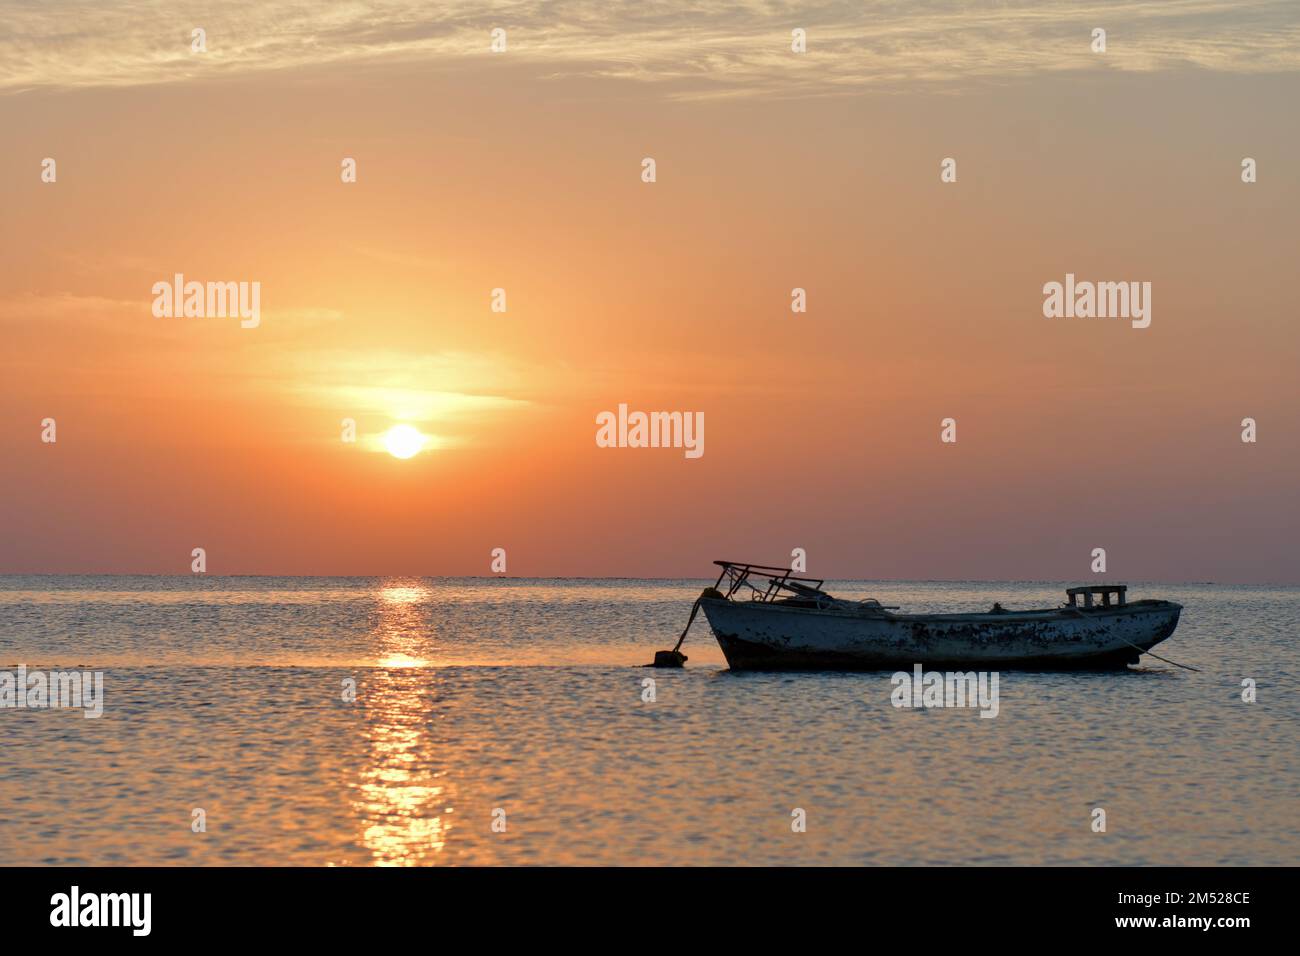 Coucher de soleil et lever de soleil sur la plage Banque D'Images